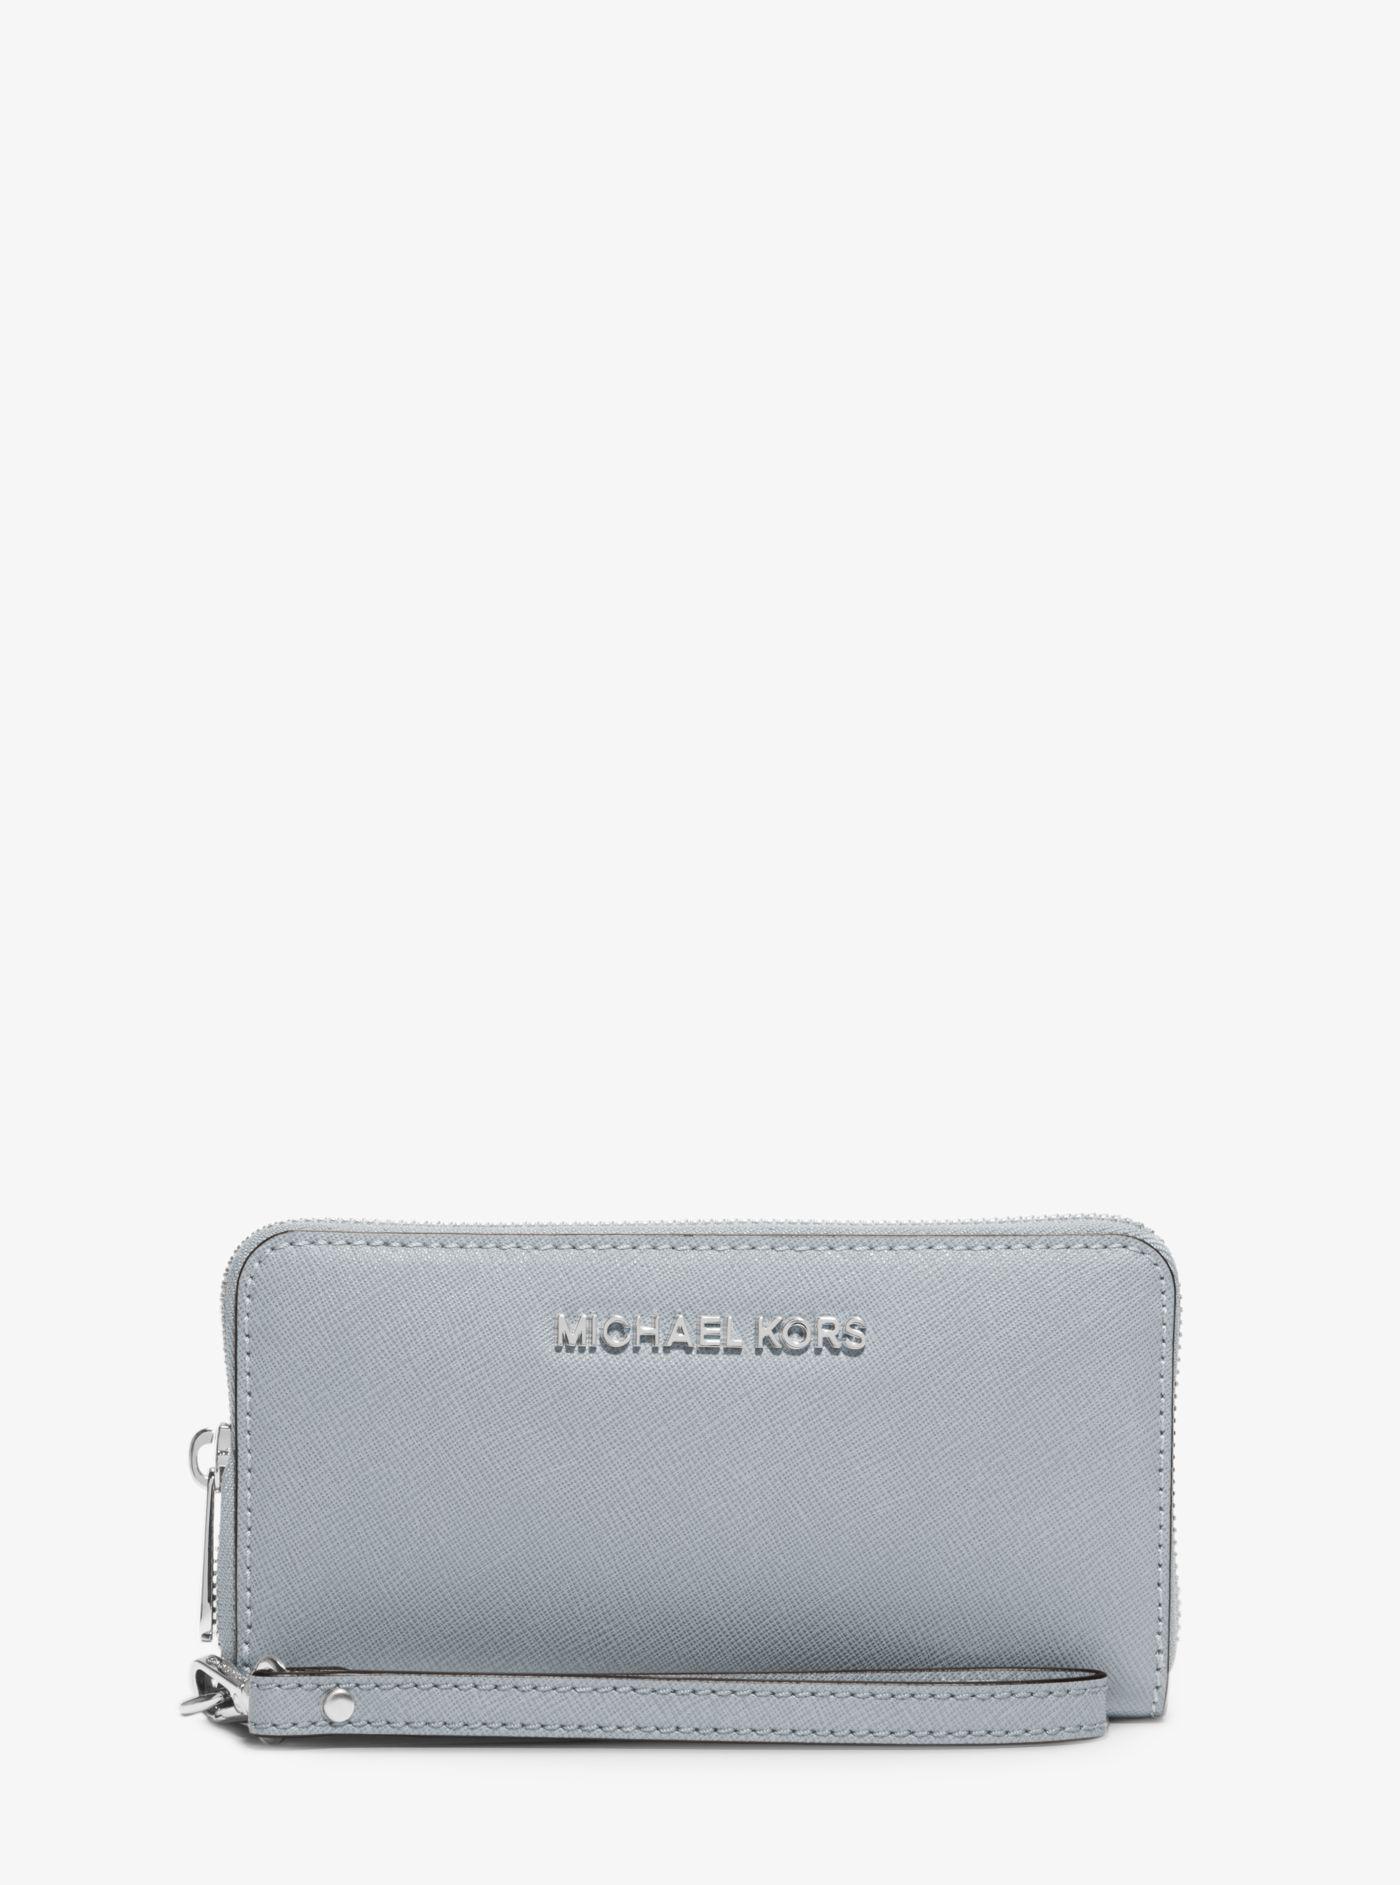 michael kors wallet dusty blue